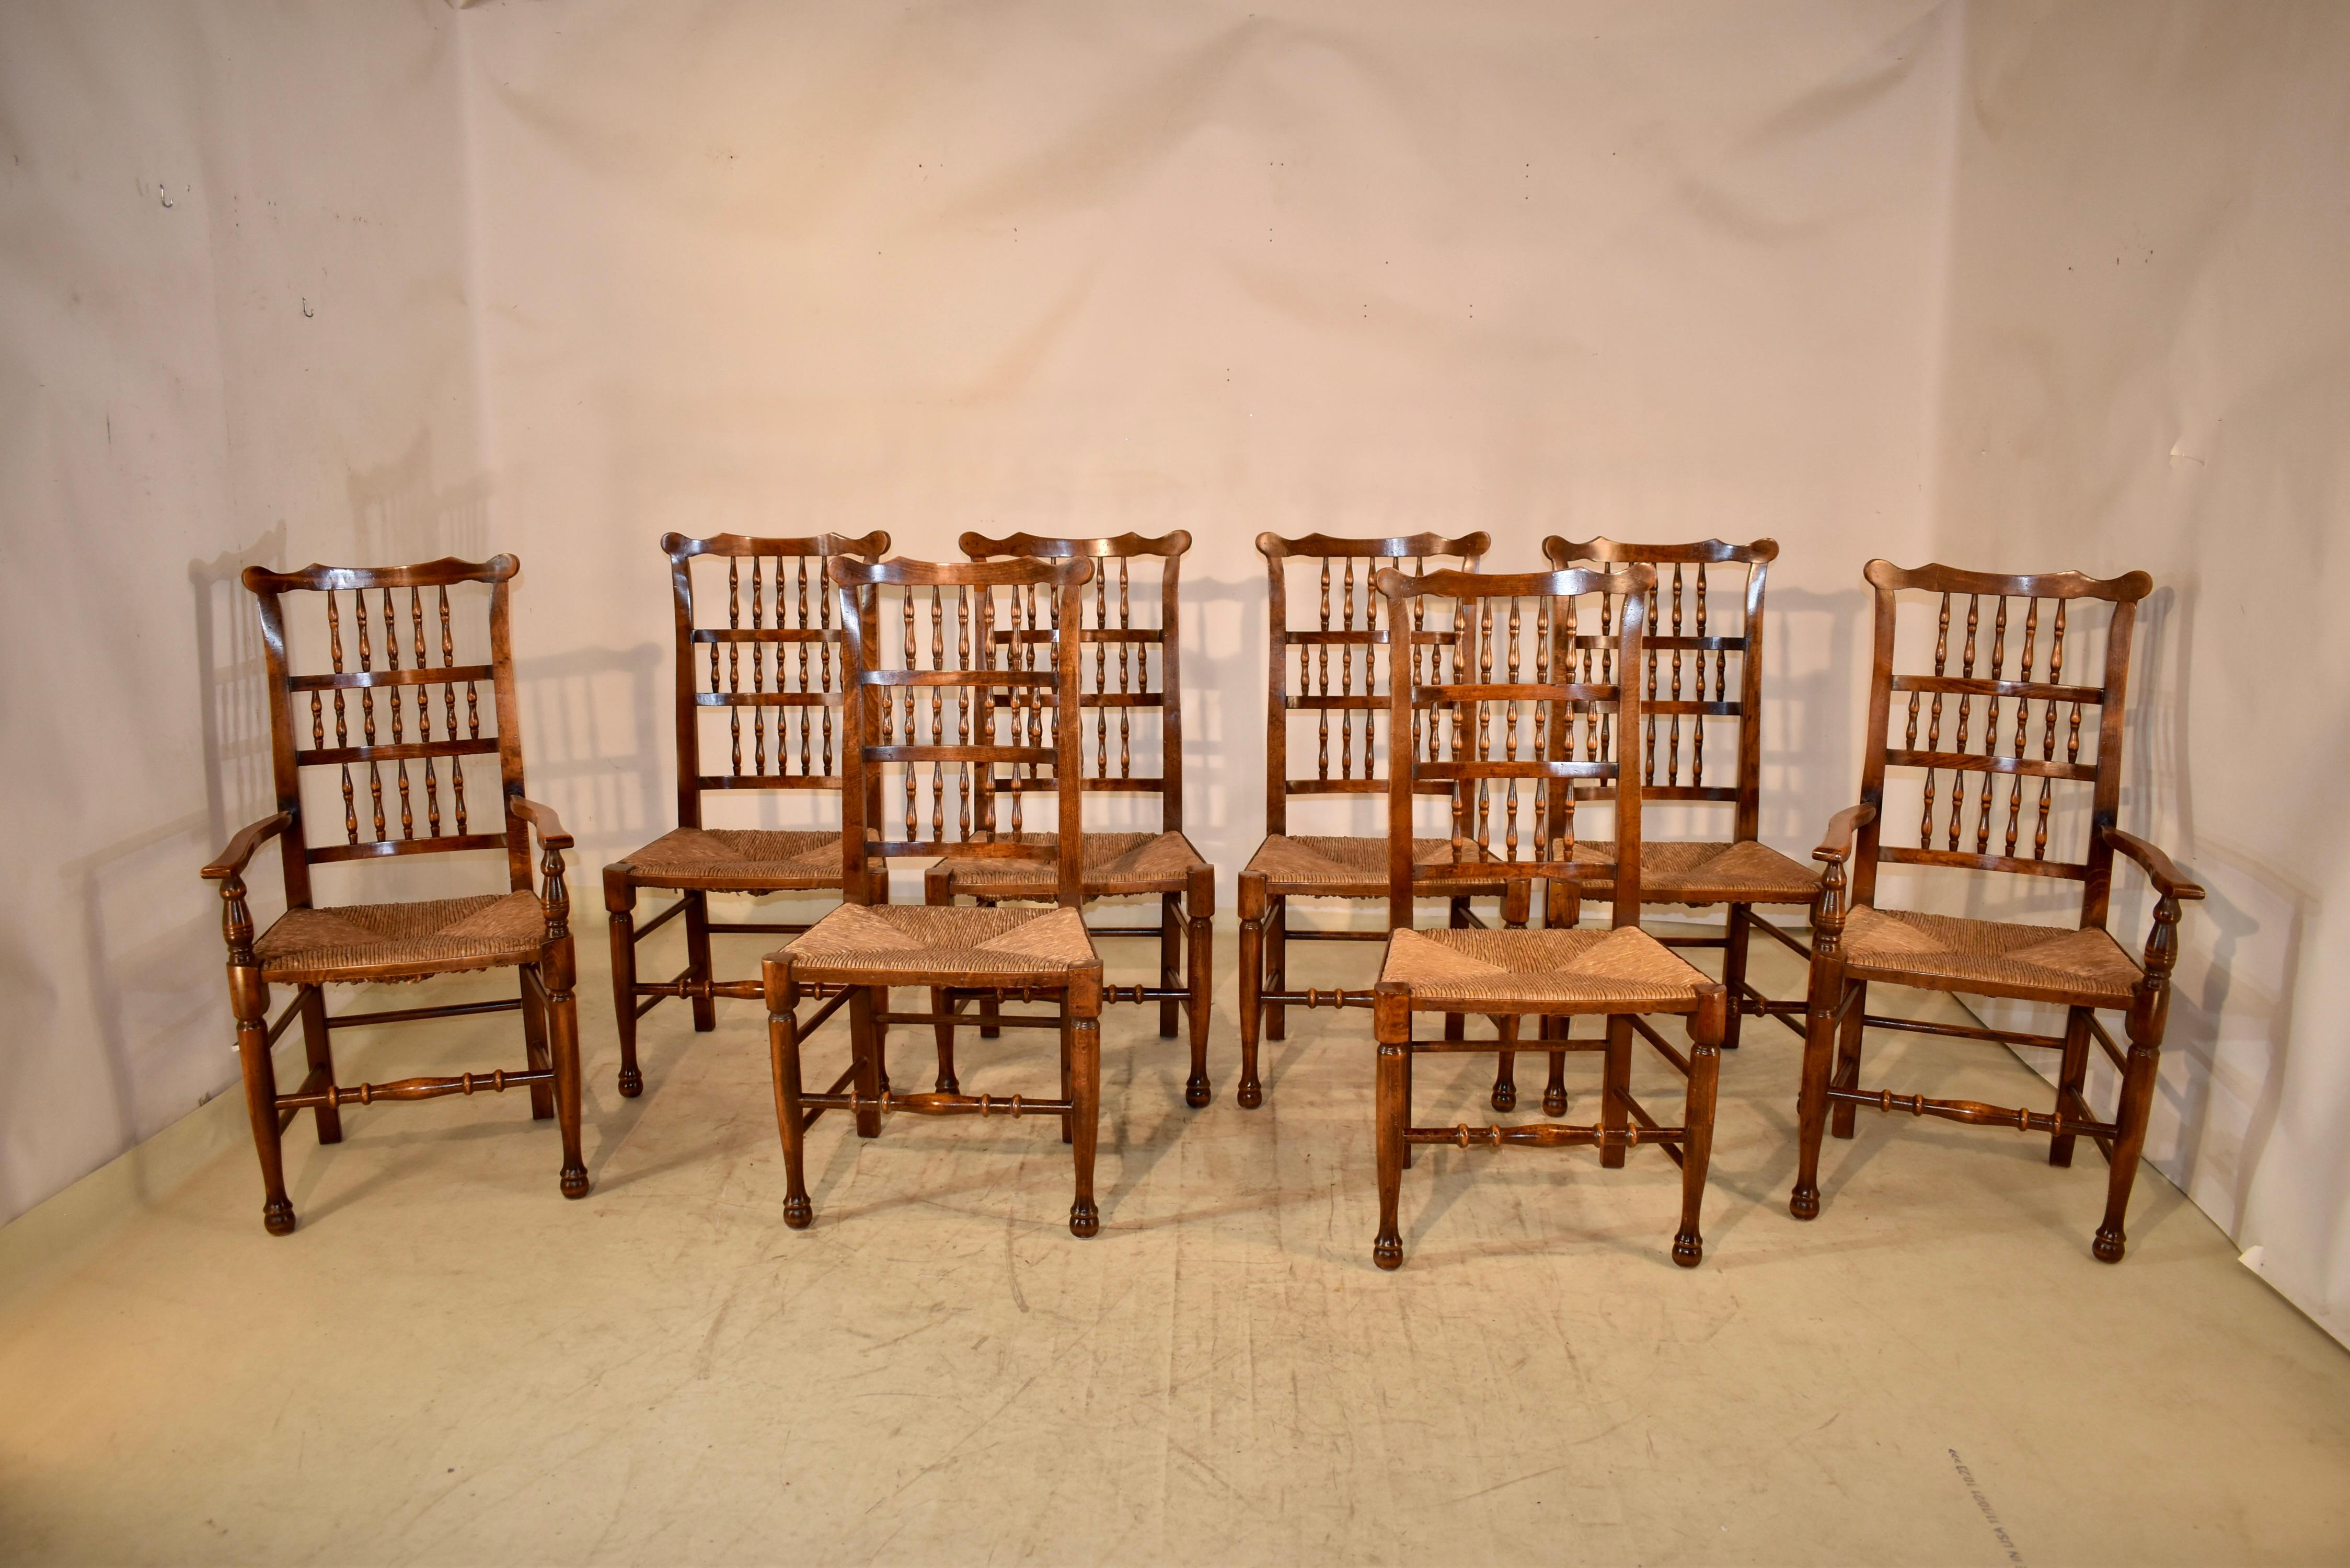 Acht Stühle mit Spindellehne aus Esche, England, mit geflochtenen Binsensitzen, um 1920. Es gibt zwei Sessel und sechs Beistellstühle. Die Stühle haben eine wunderbare Form A und sind aus reich gefärbtem Eschenholz gefertigt.  Die Rückenlehnen sind